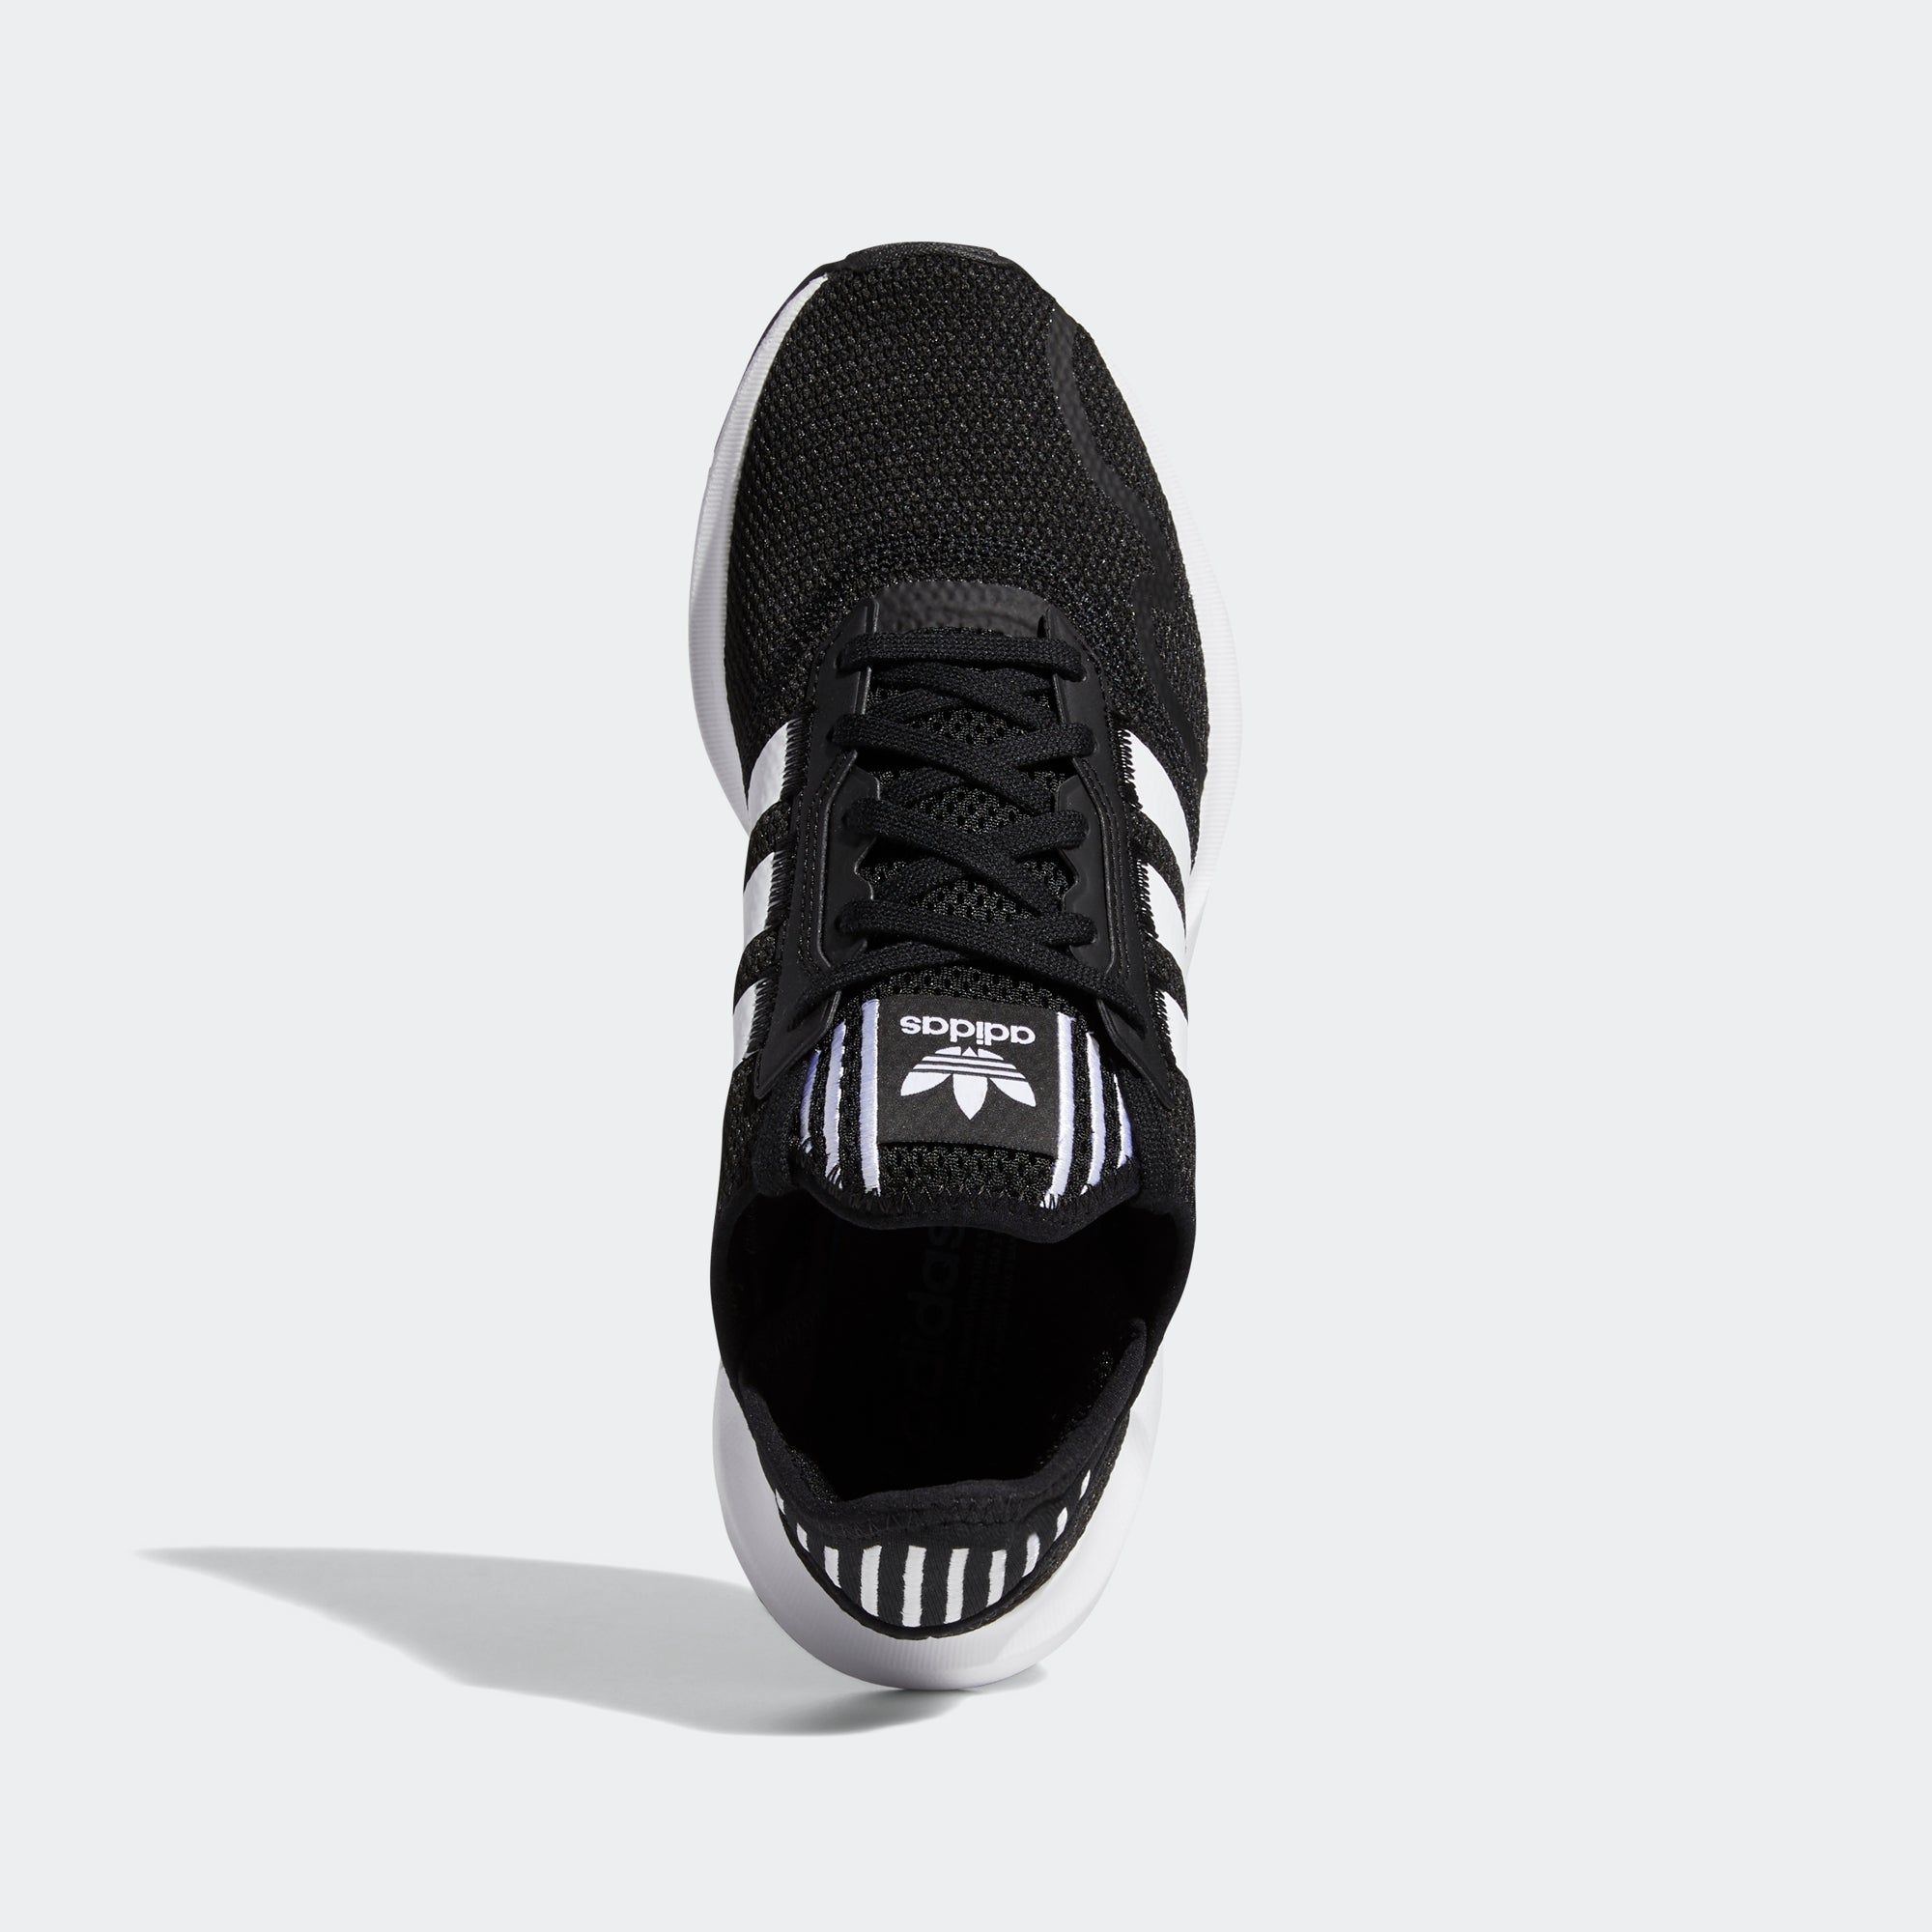 adidas originals swift run black and white